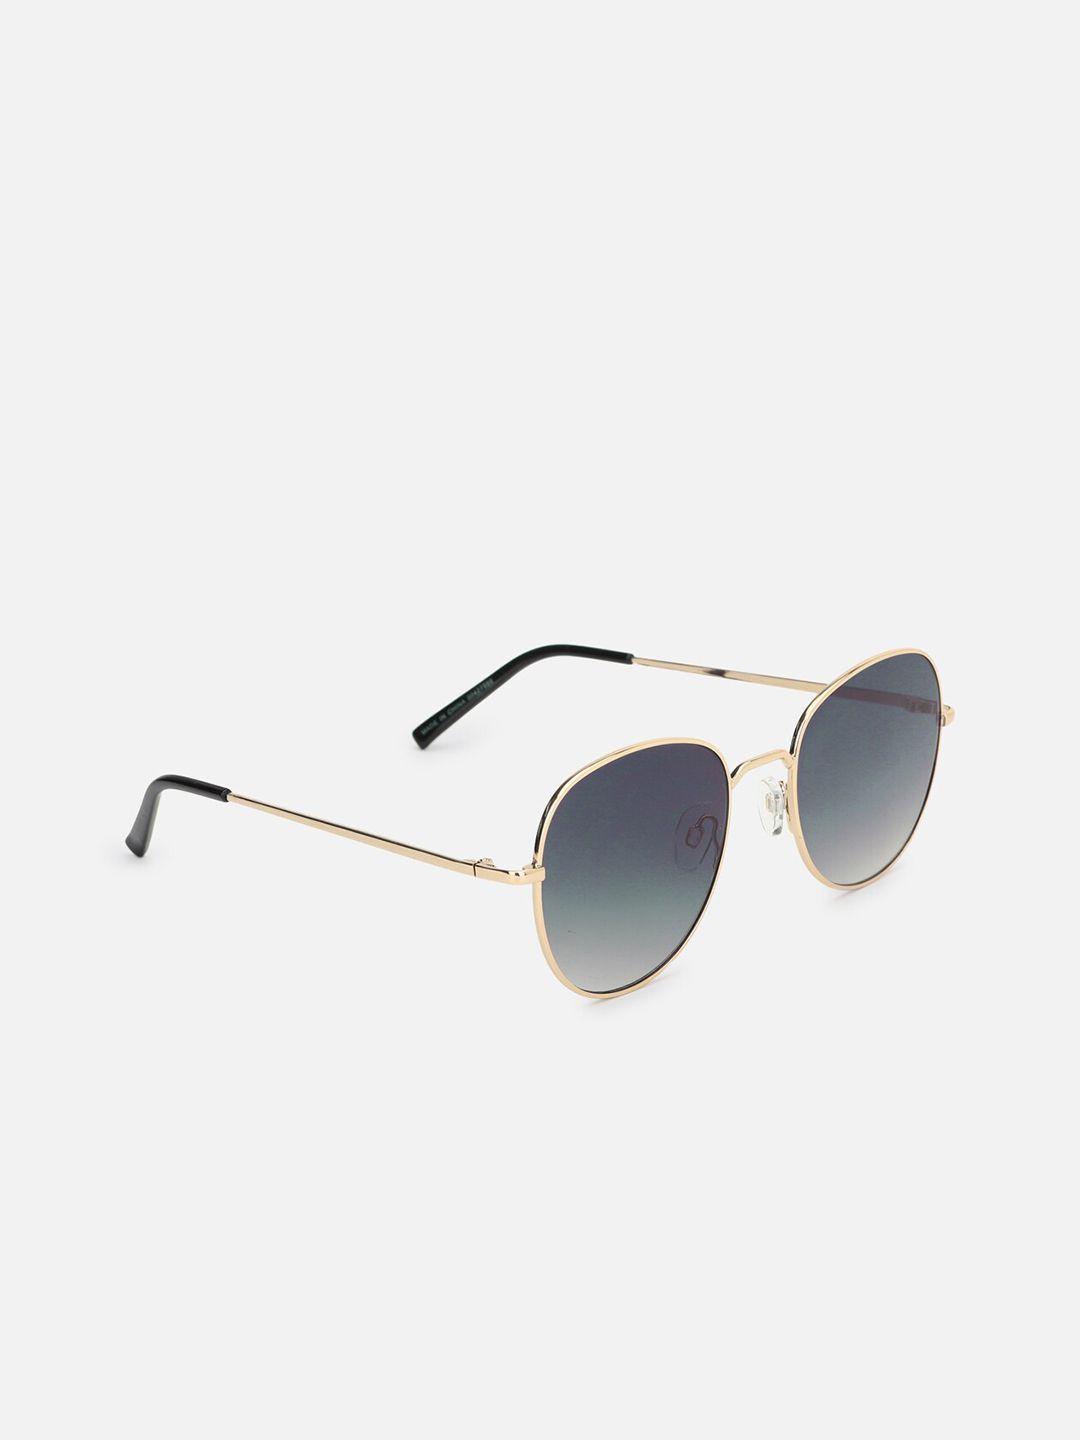 forever-21-women-blue-lens-&-gold-toned-aviator-sunglasses